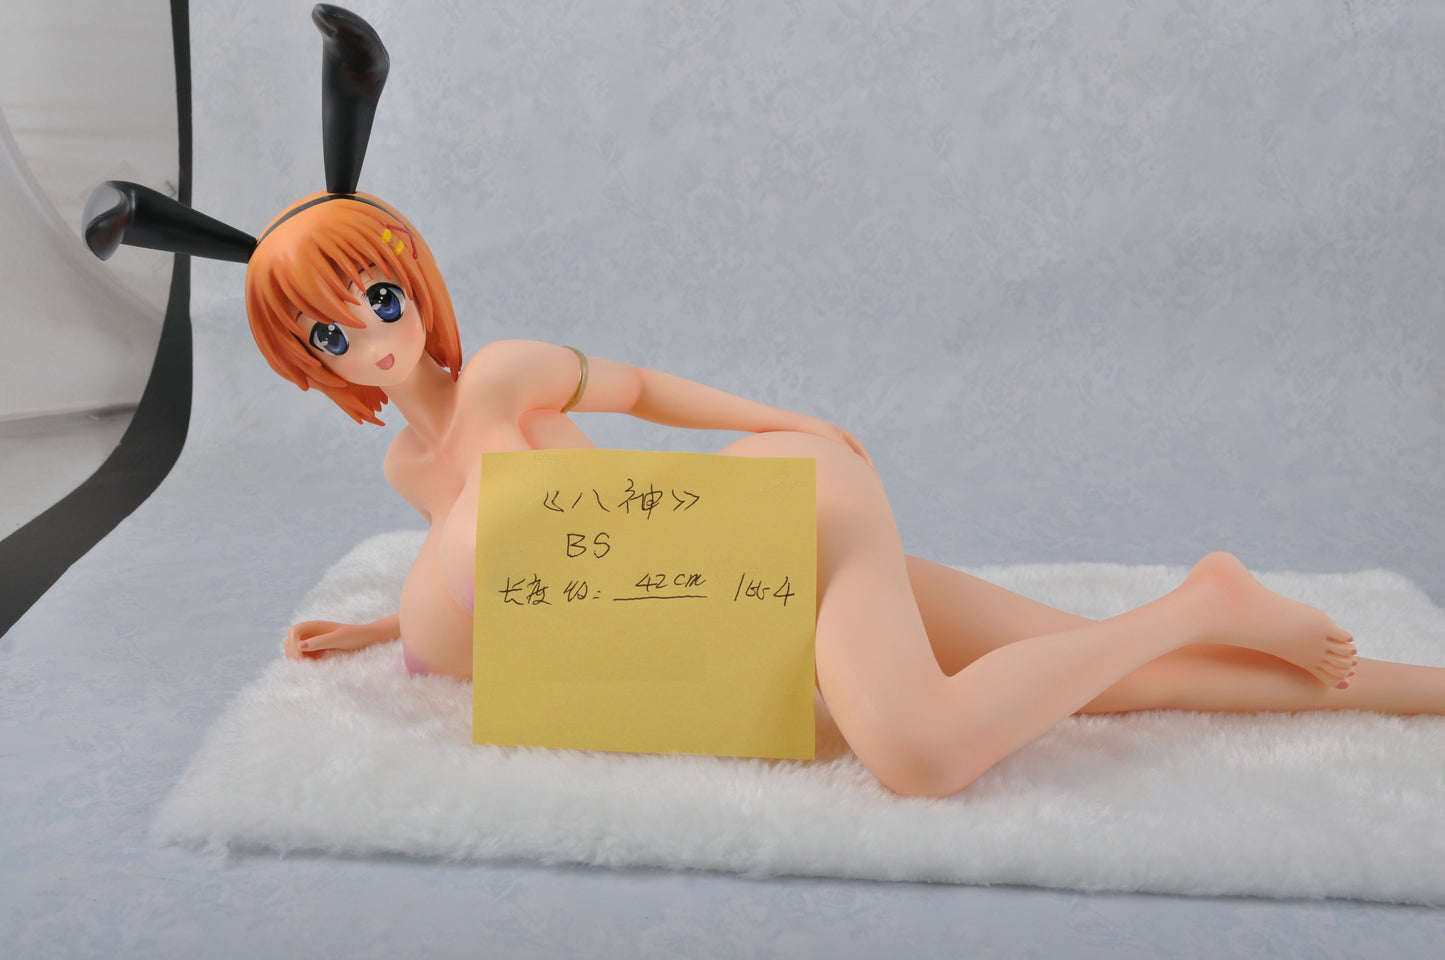 Magical Girl Lyrical Nanoha Hayate Yagami huge breast Ver. 1/4 naked anime figure resin figures